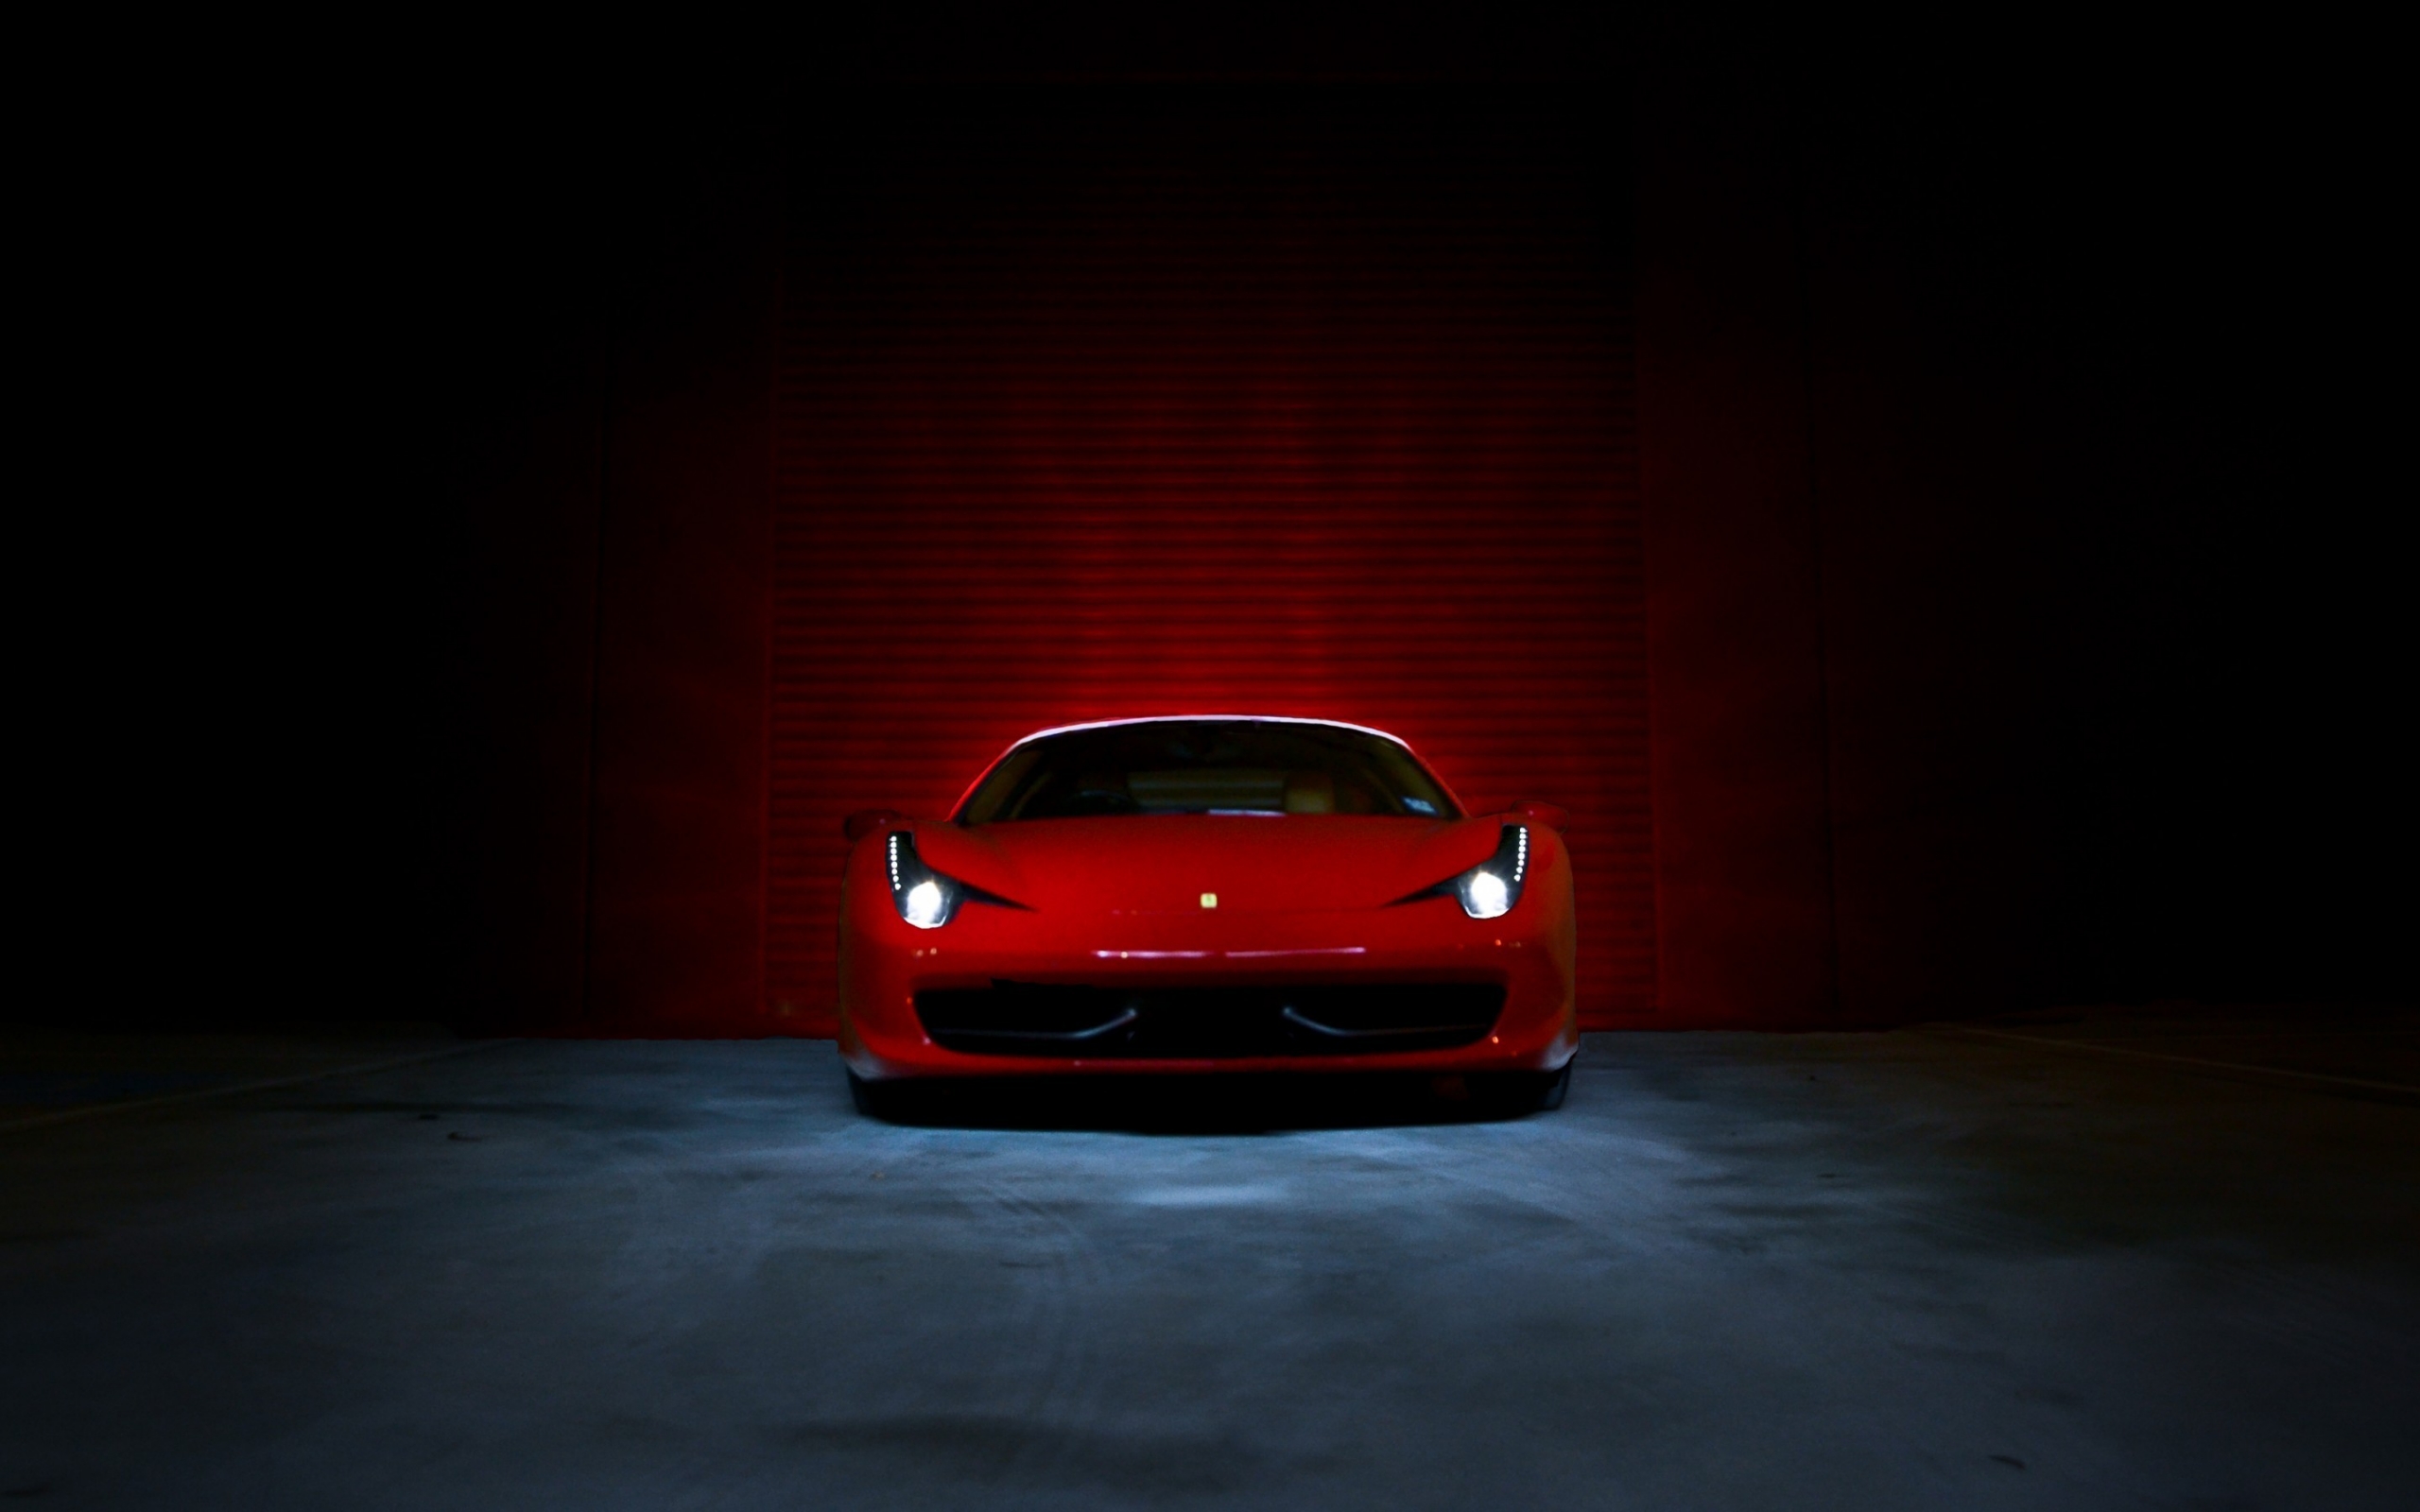 Ferrari 458 Italia Red  for 2560 x 1600 widescreen resolution